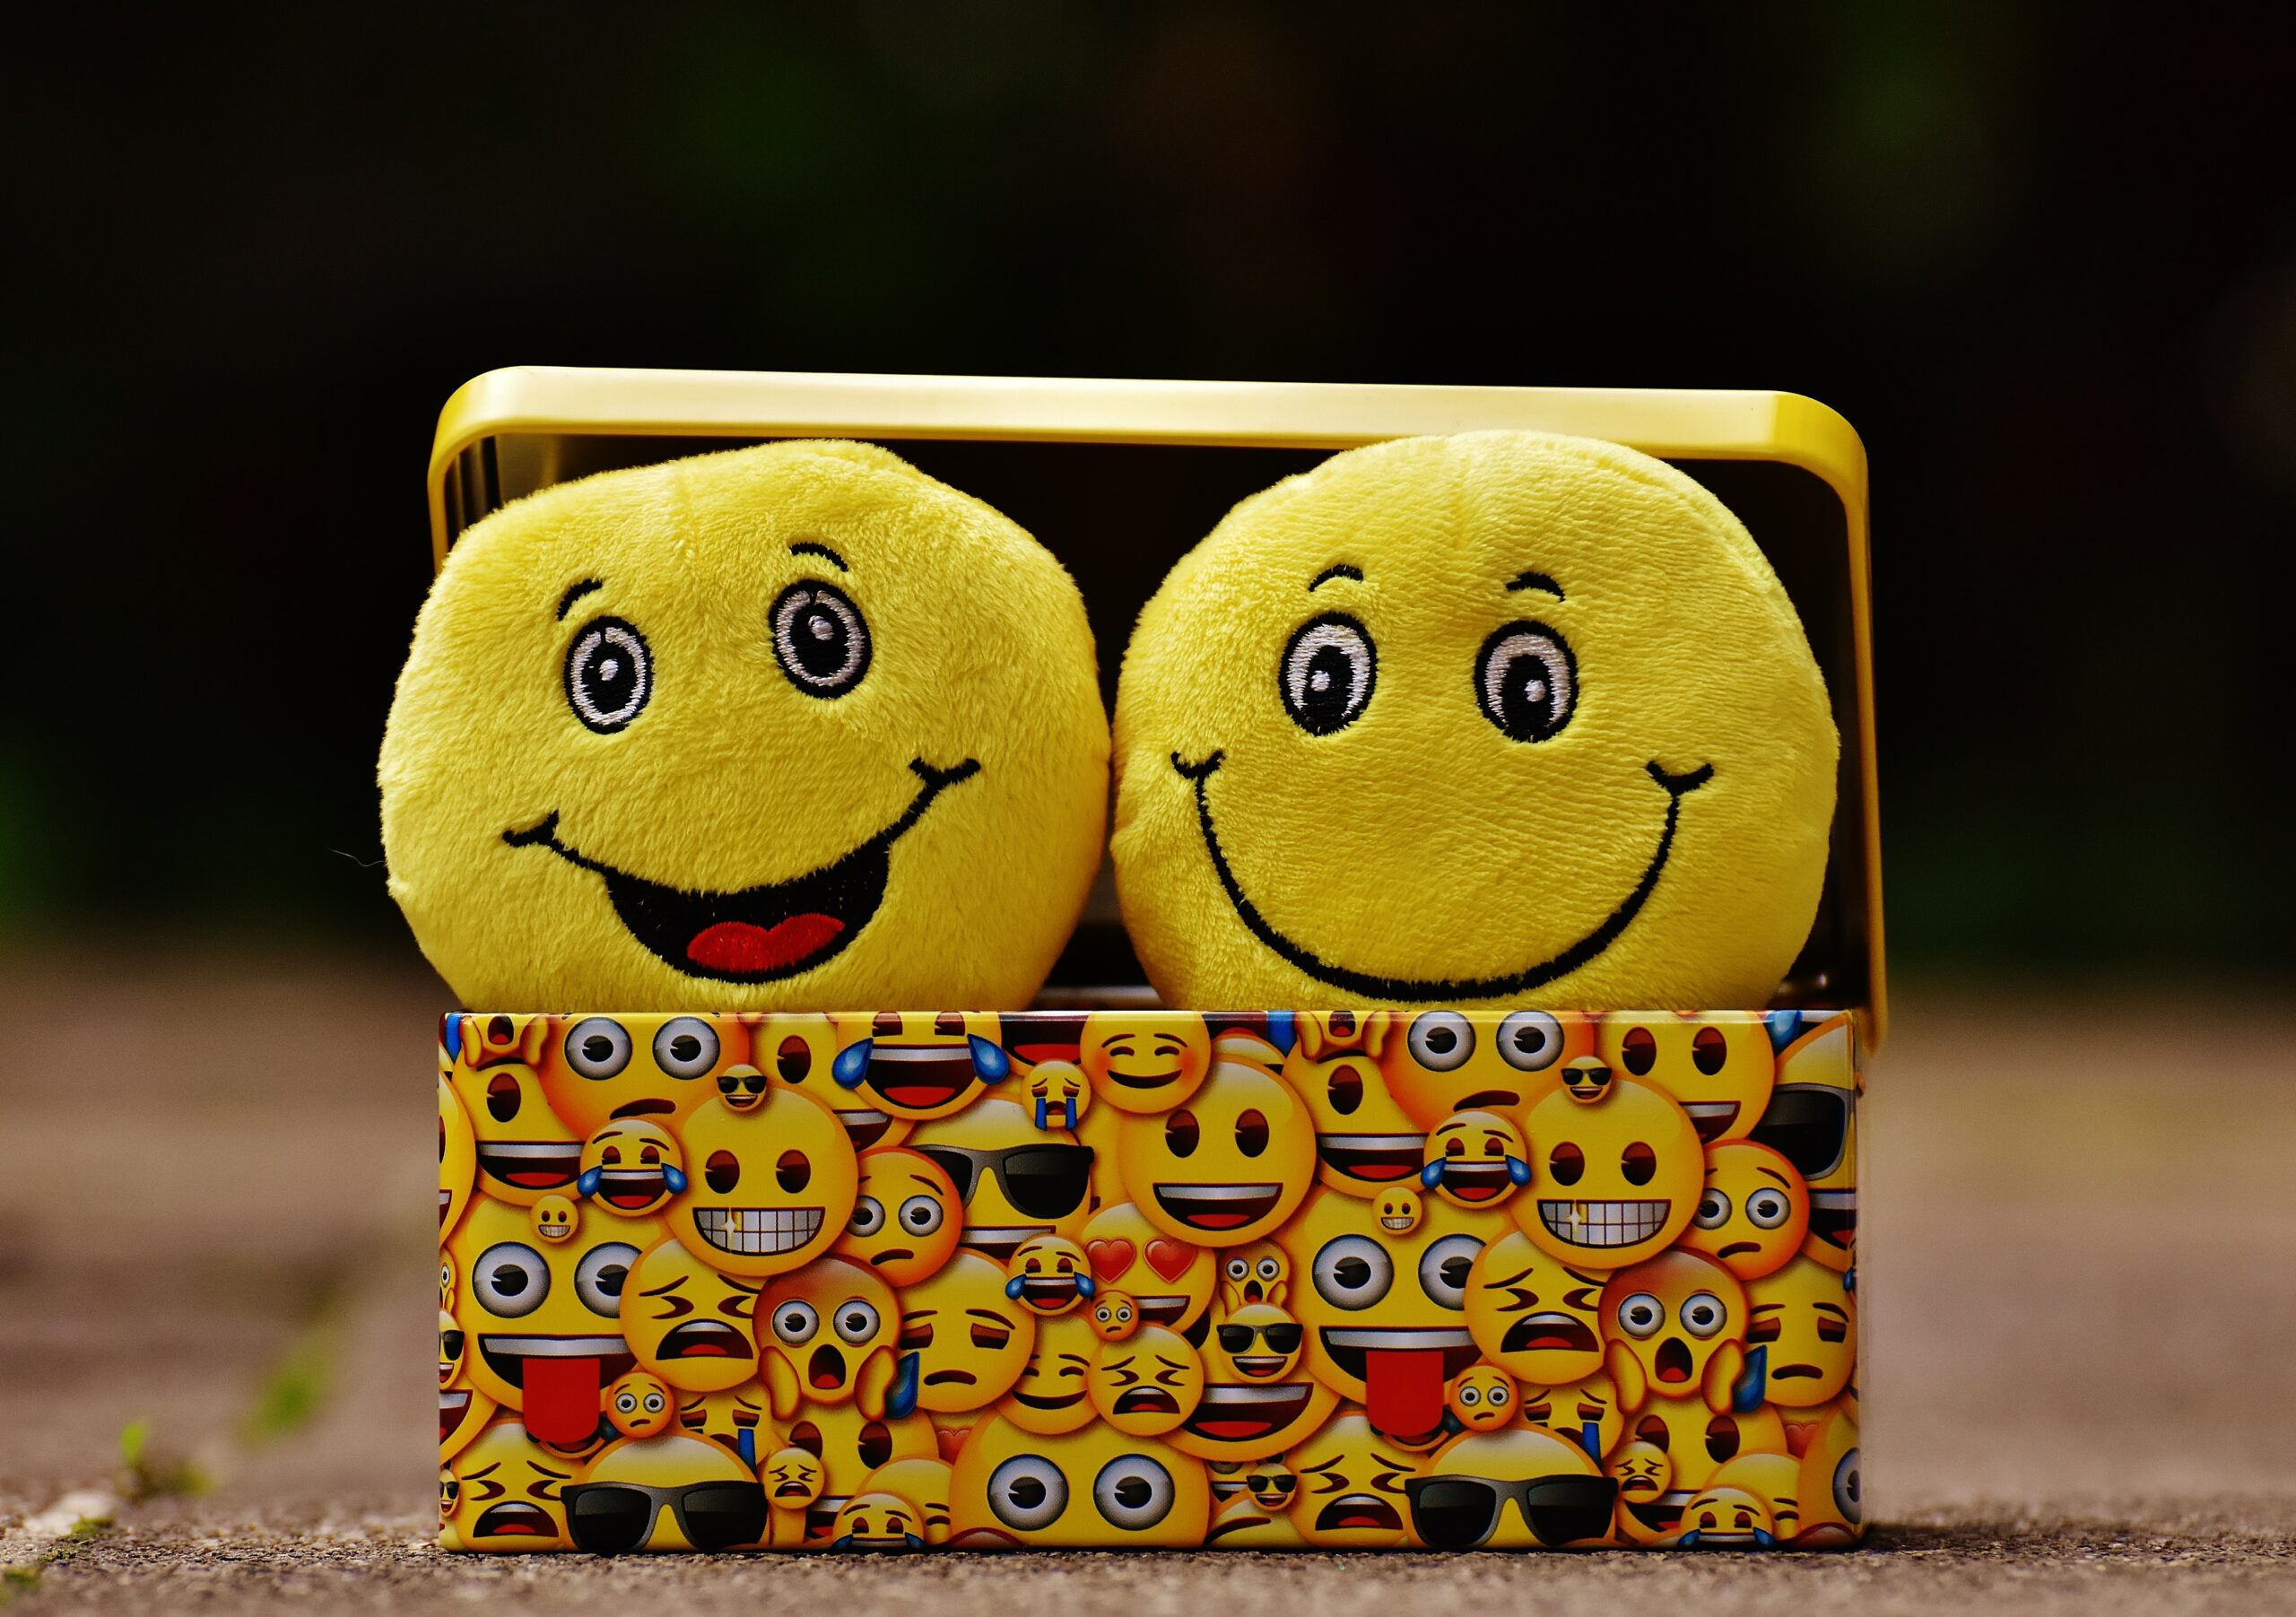 Foto de Pixabay: https://www.pexels.com/es-es/foto/dos-emoji-amarillos-en-caja-amarilla-207983/